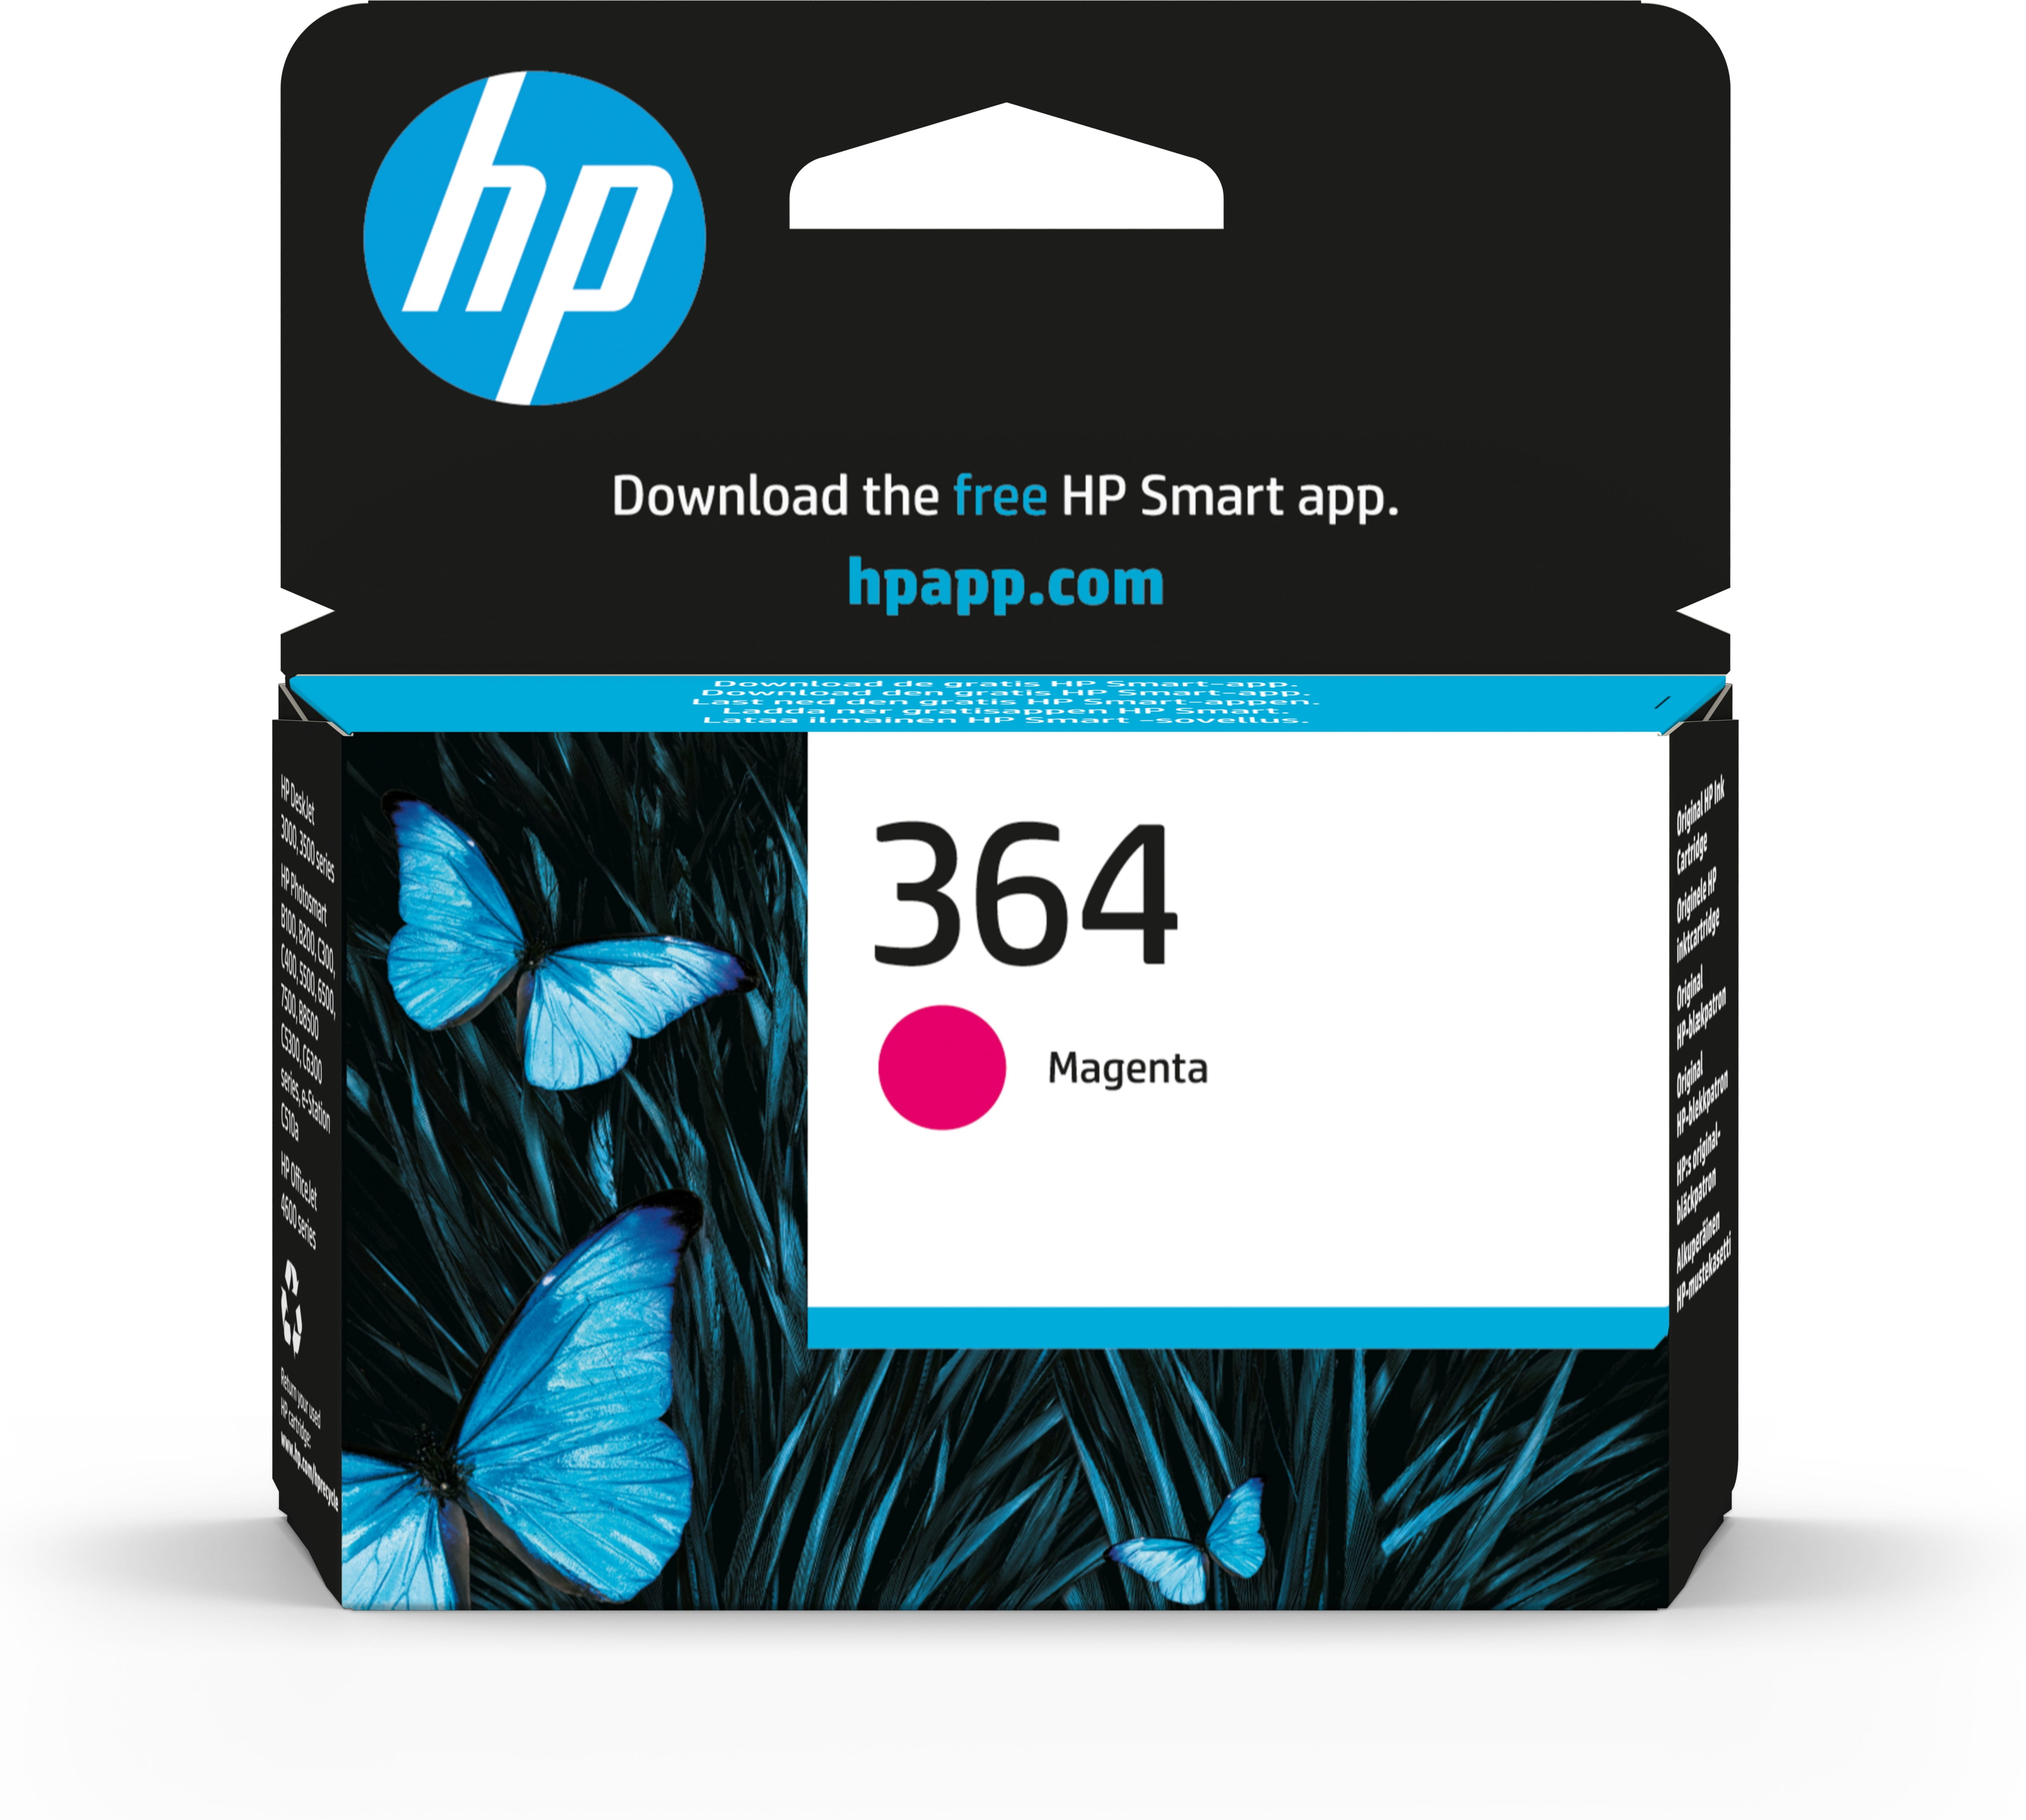 HP 364 - Magenta - original - Tintenpatrone - für Deskjet 35XX